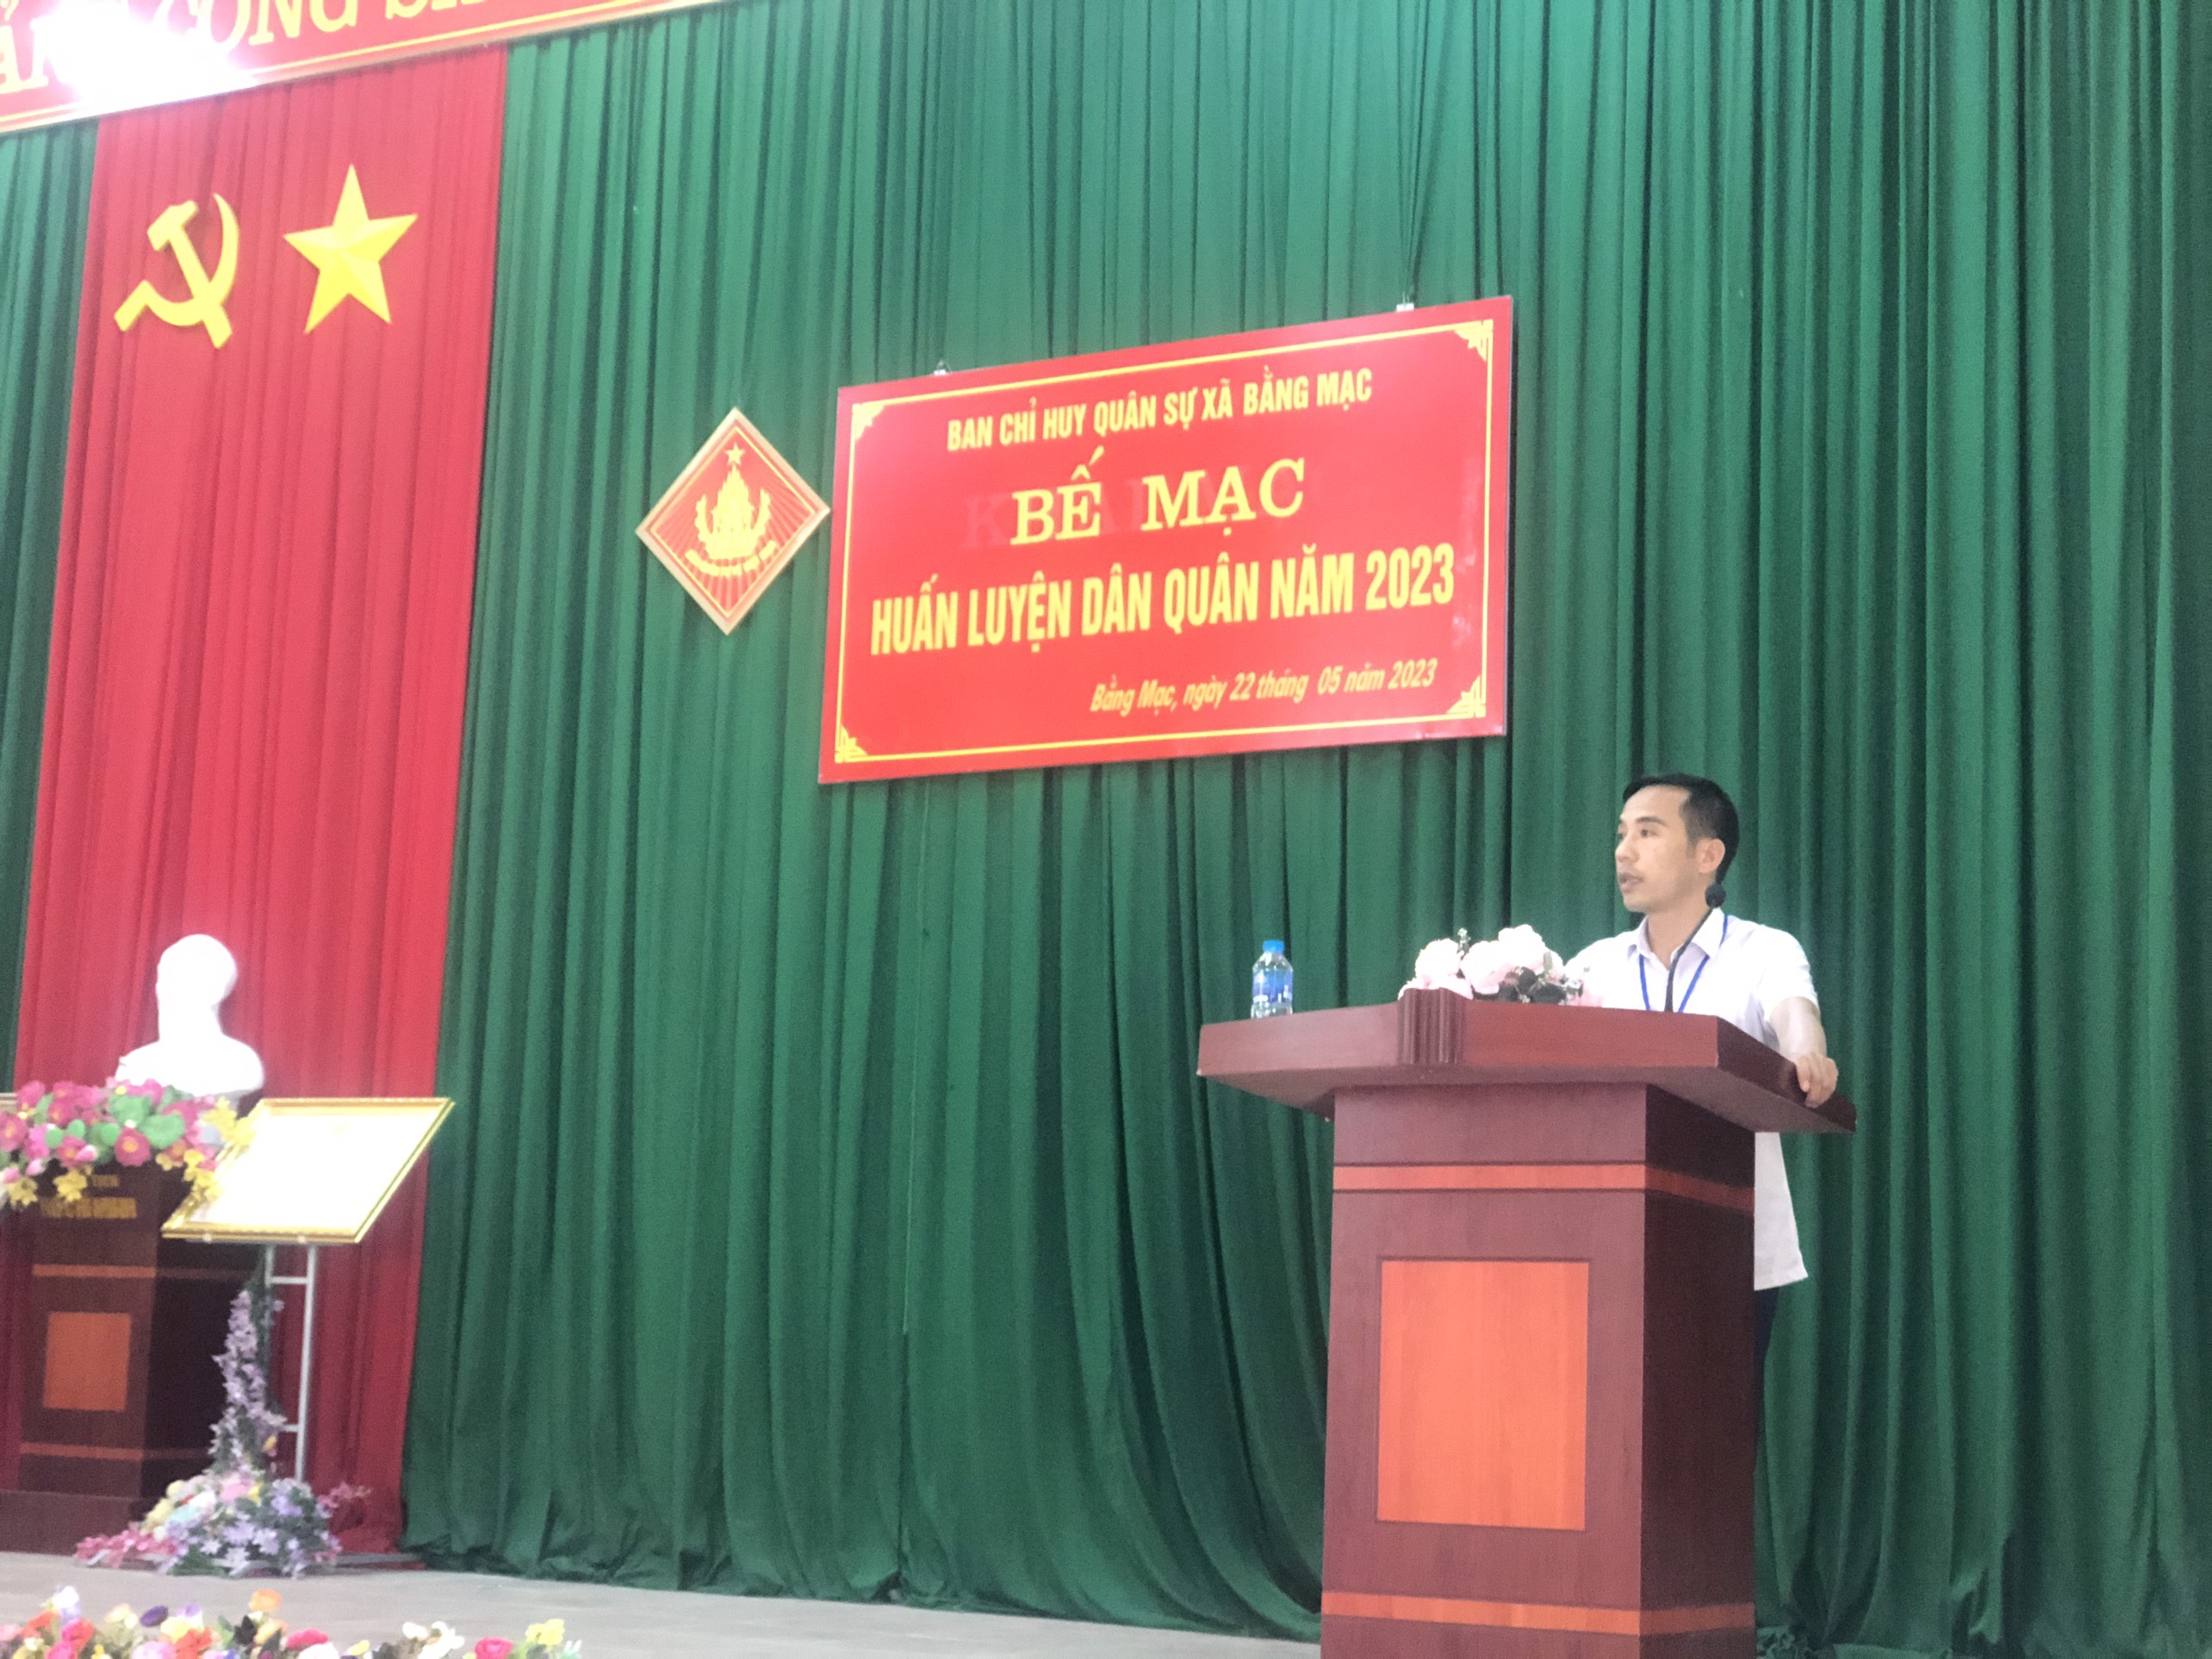 Đồng chí Hoàng Tiến Đoan - Phó bí thư Đảng ủy; Chủ tịch UBND xã phát biểu trong buổi lễ Bế mạc dân quân 2023